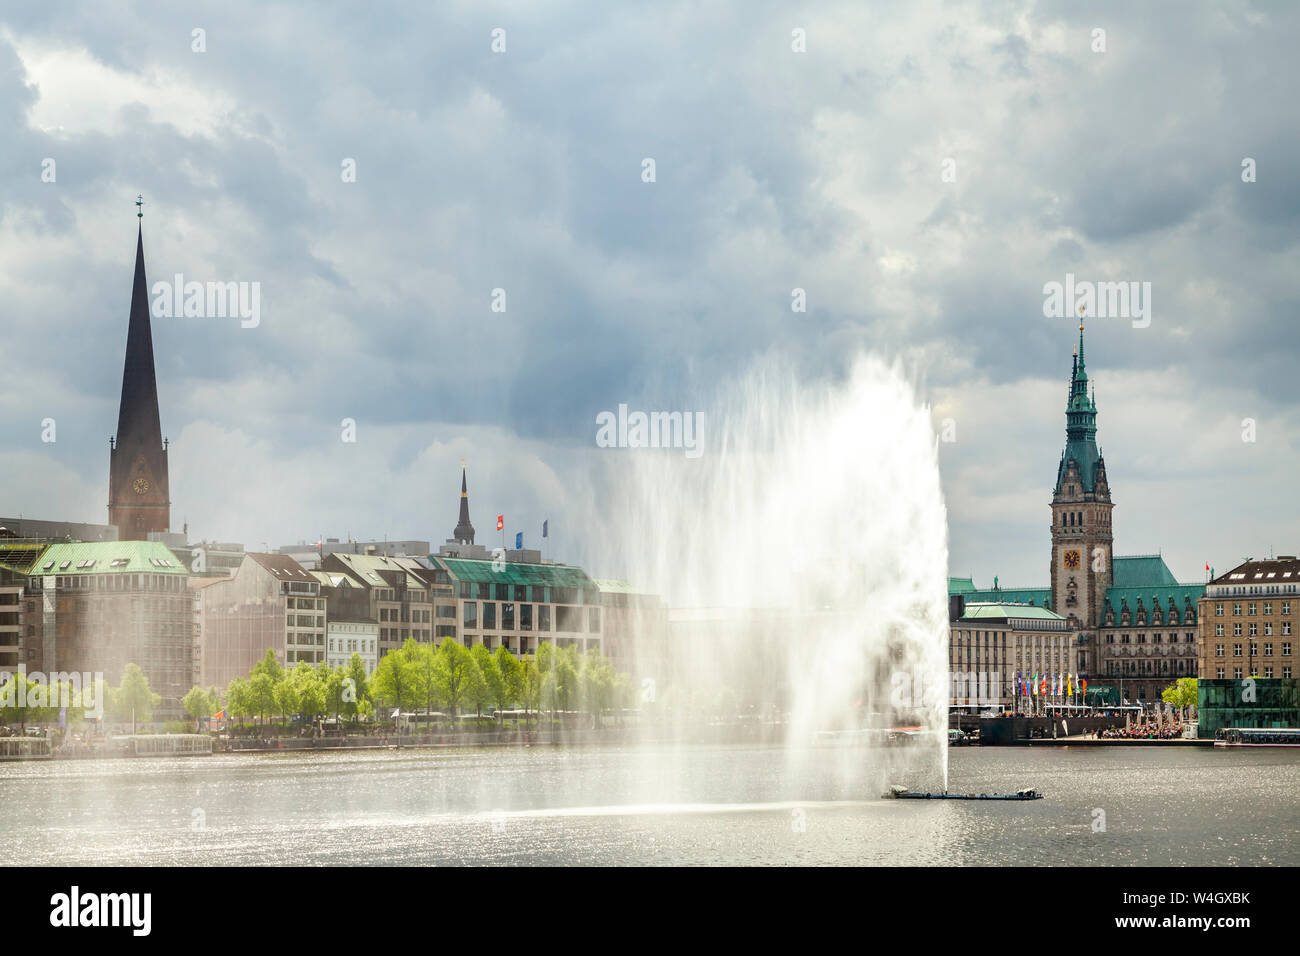 Vista del municipio con interno Alster e Alster fontana in primo piano, Amburgo, Germania Foto Stock